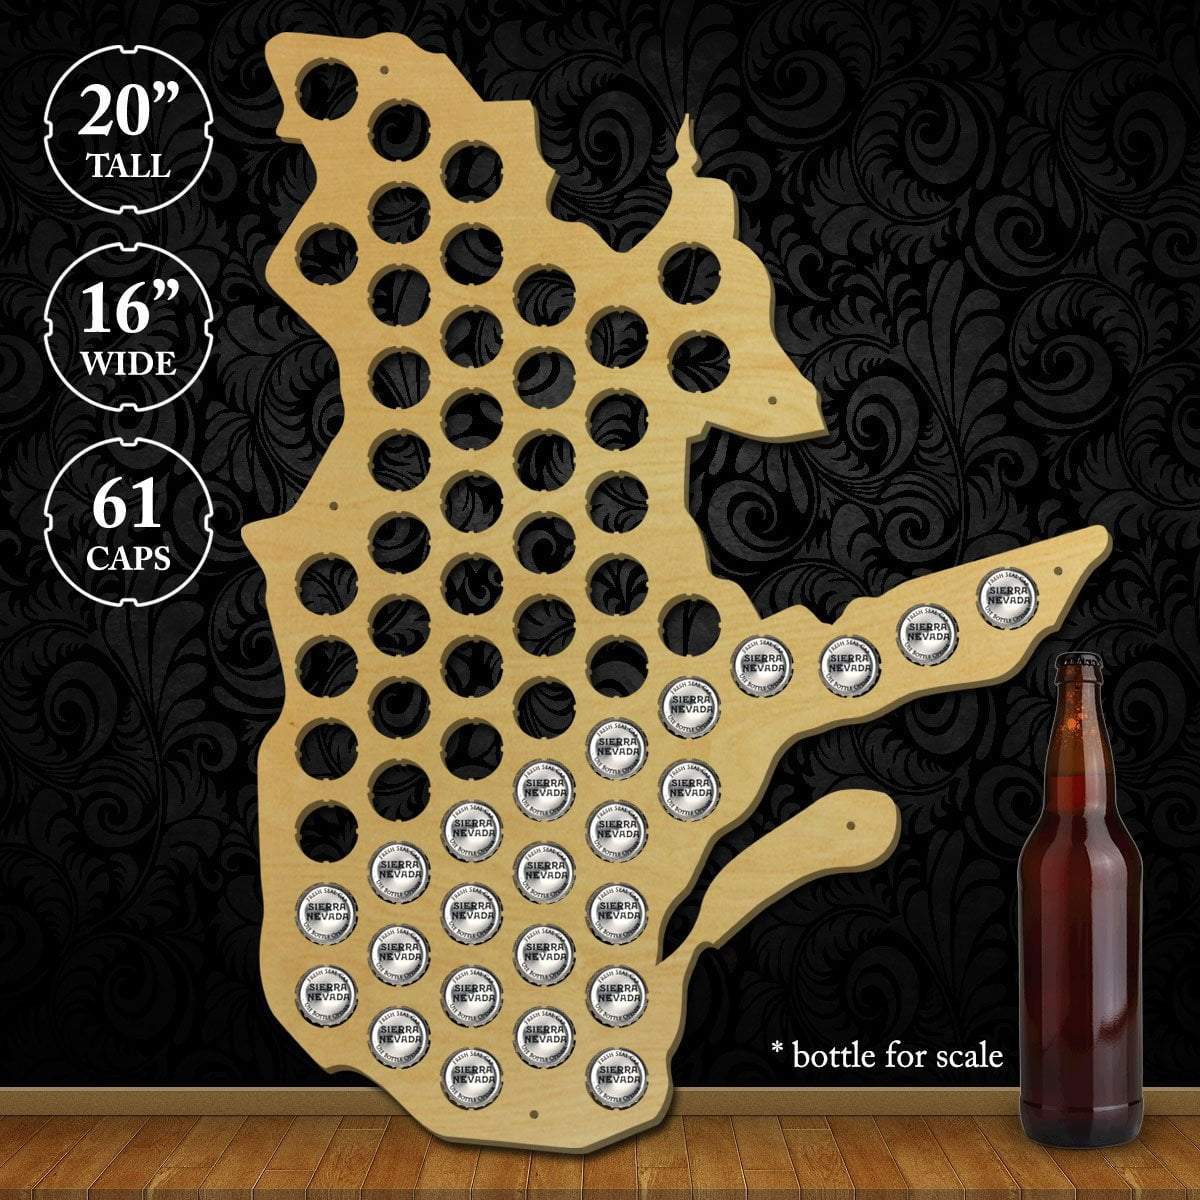 Torched Products Beer Bottle Cap Holder Quebec Beer Cap Map (777843540085)